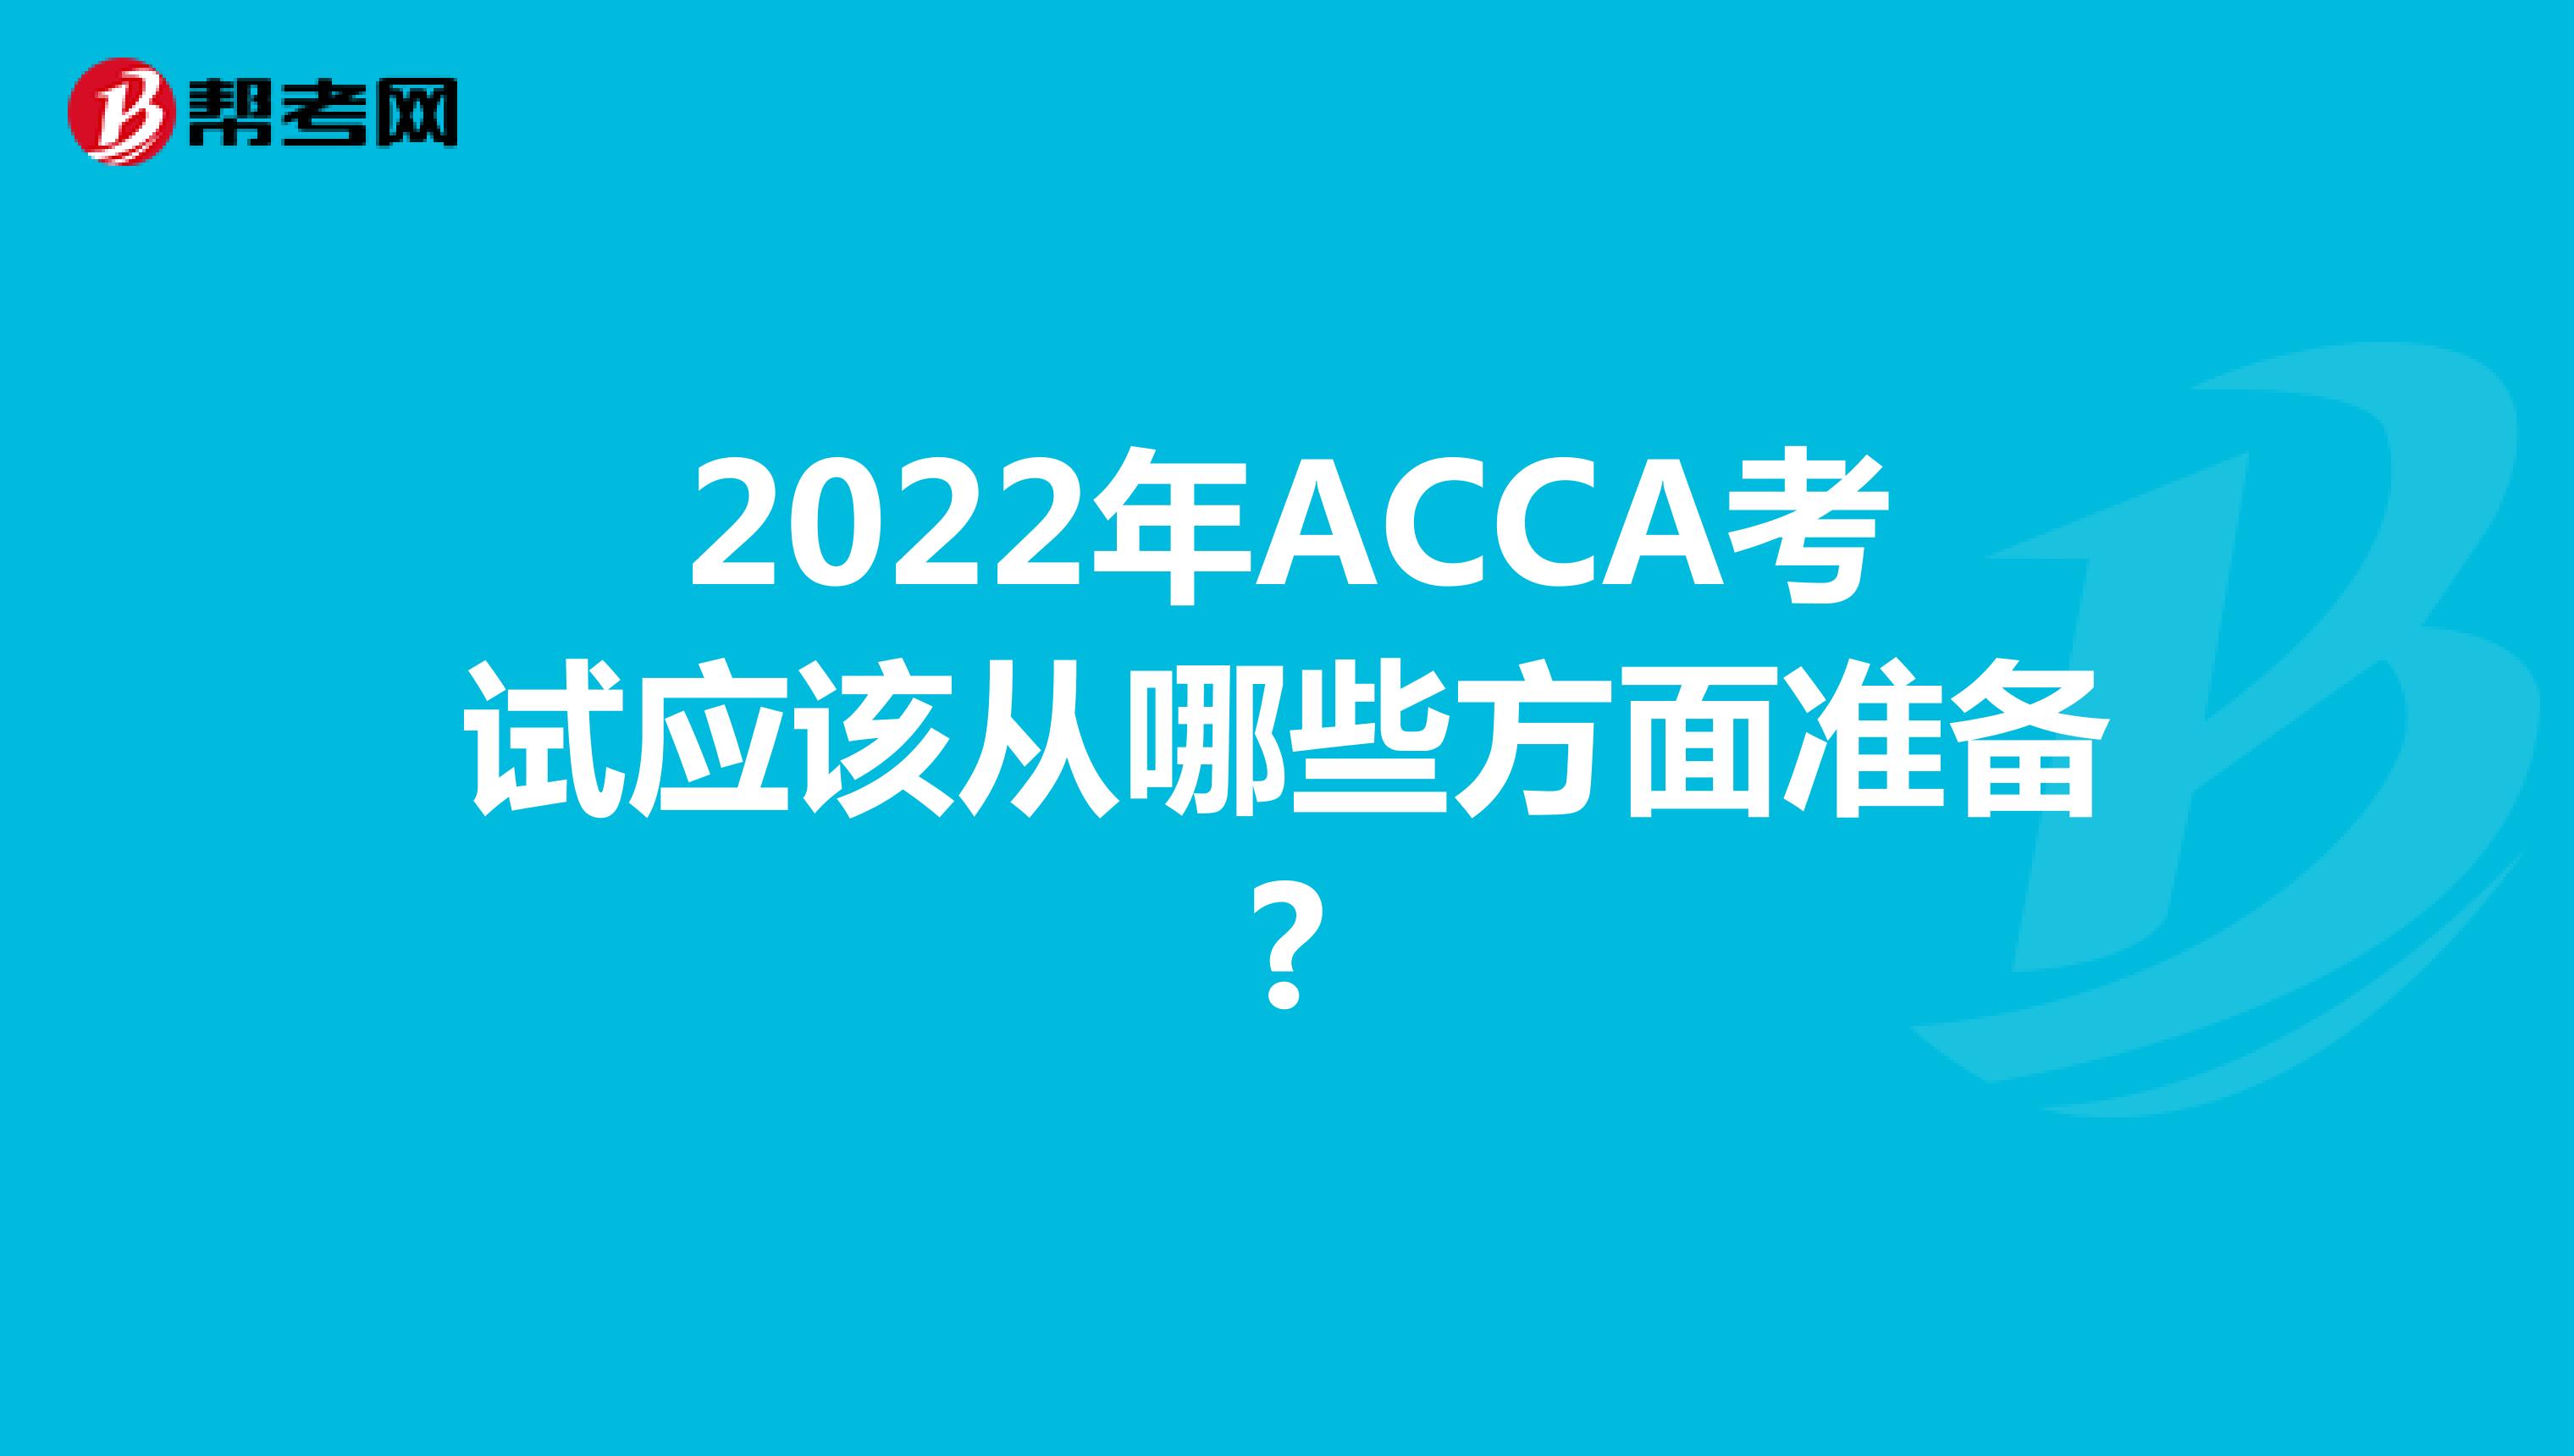 2022年ACCA考试应该从哪些方面准备?